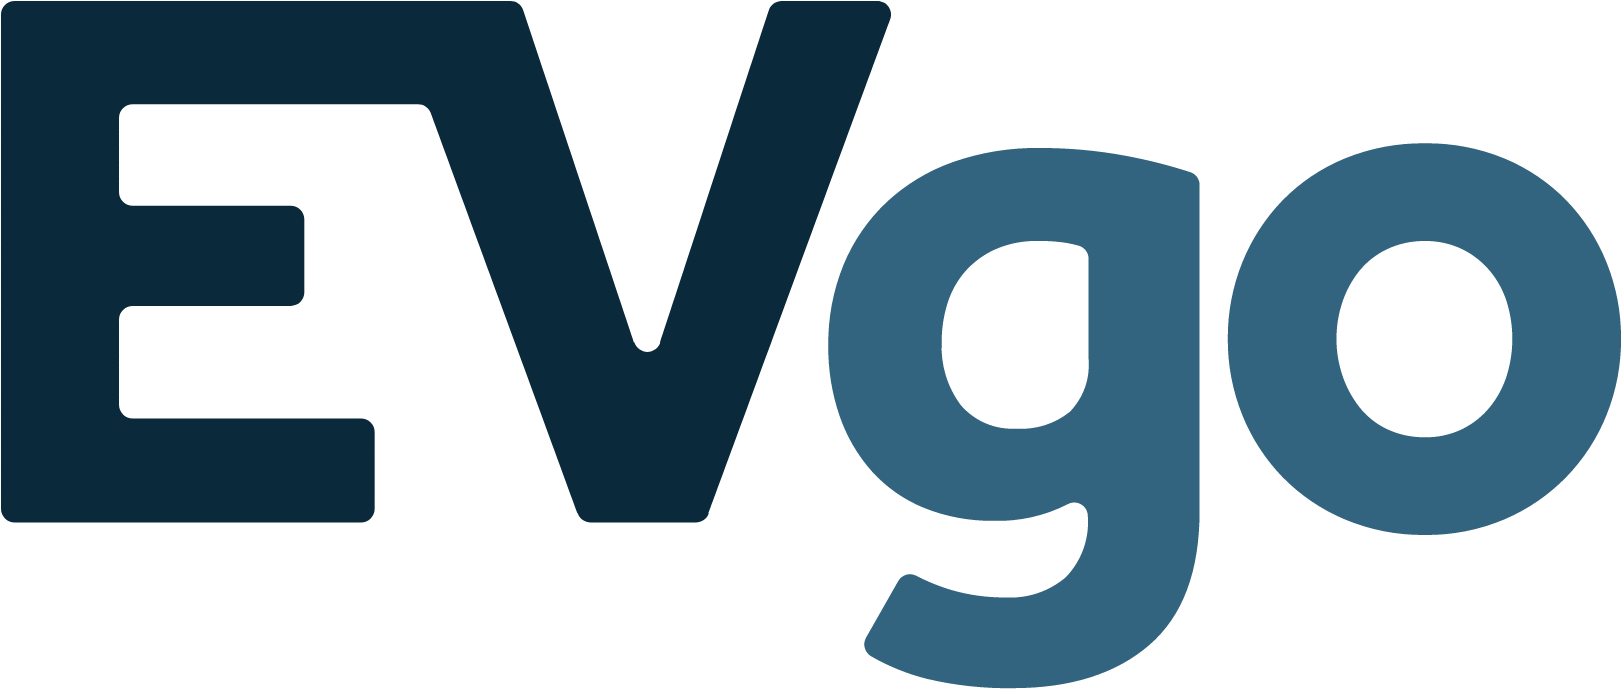 EVgo logo (PNG transparent)